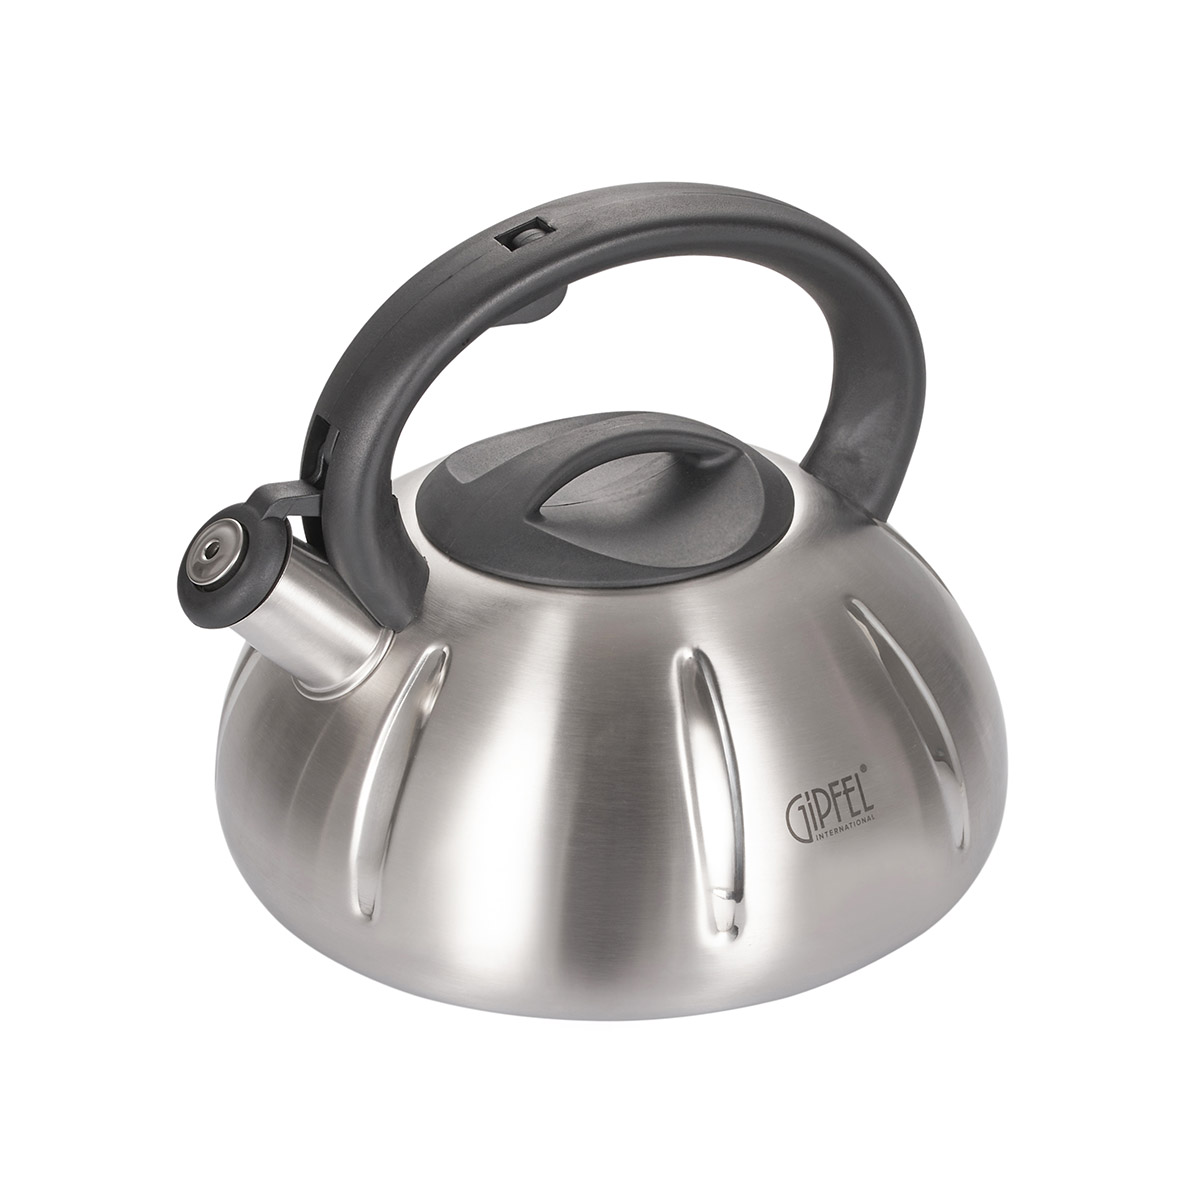 Чайник для плиты Gipfel Cosmo 8520 чайник для плиты со свистком gipfel essen 8645 2 5 л